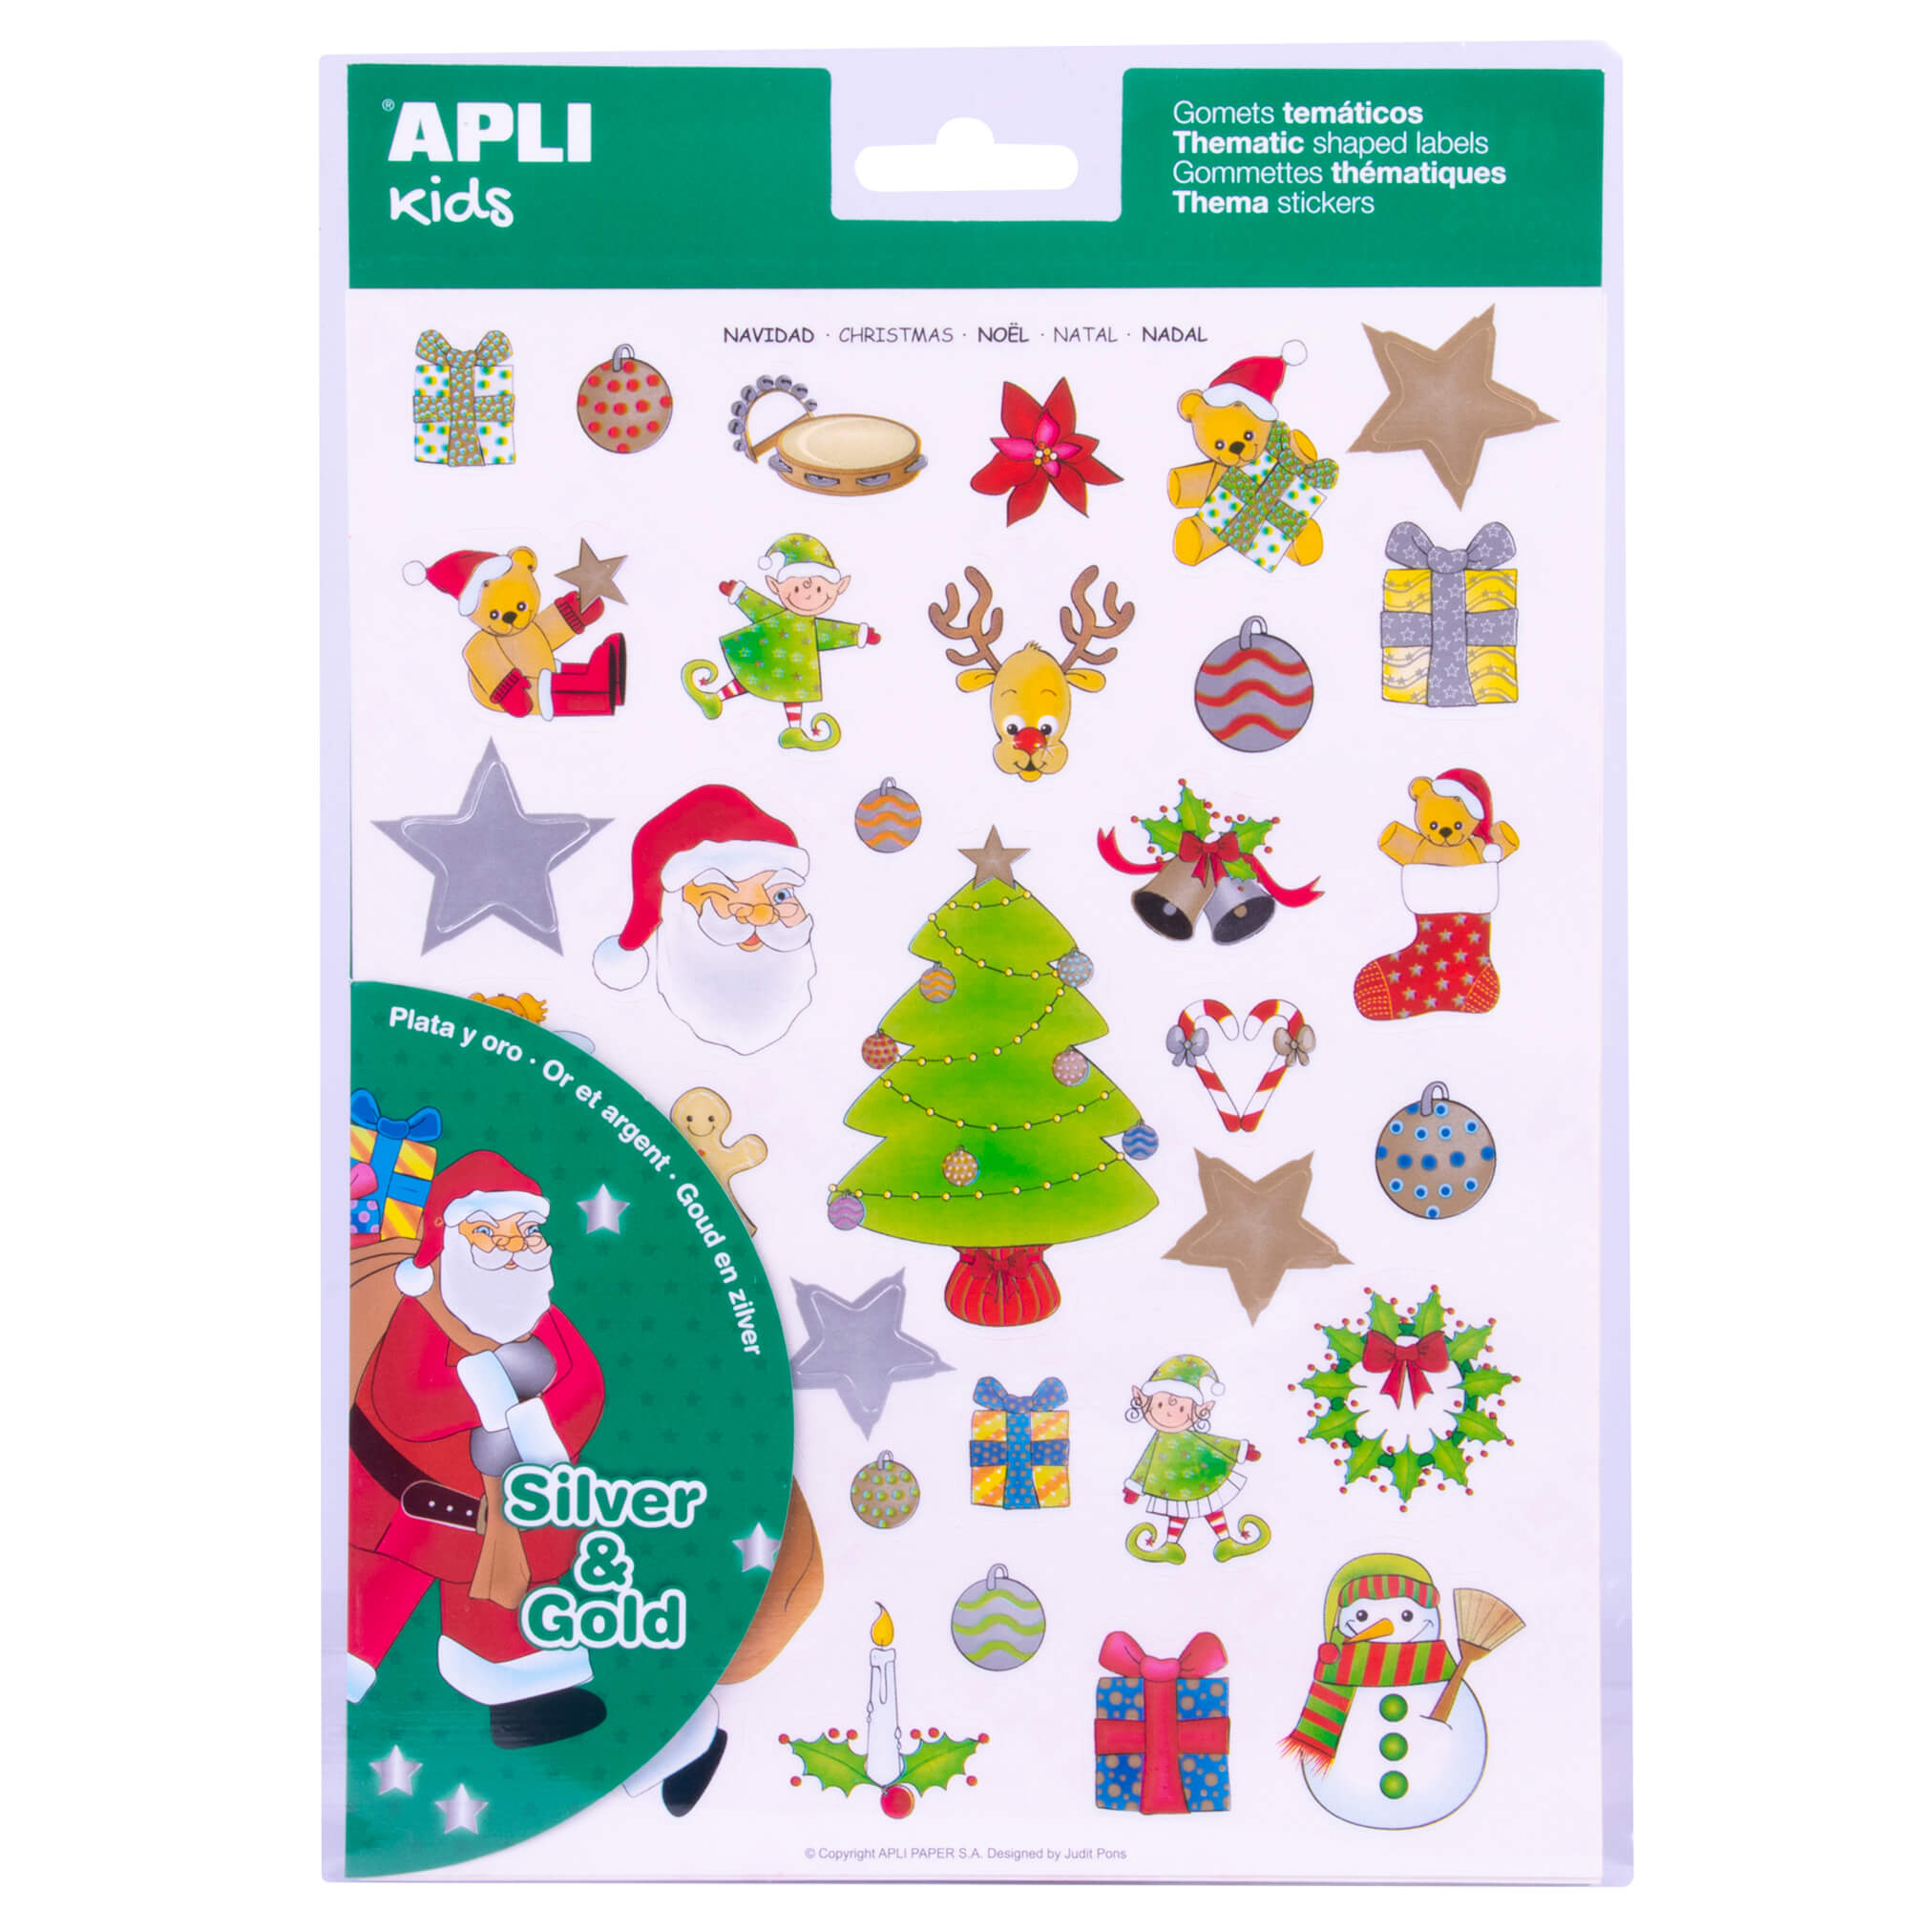 LOT de 5 Apli Christmas Theme Stickers - 99 Stickers sur 3 Feuilles - Illustrations Pédagogiques - Adhésif Amovible - Encre Or et Argent - Normes EN-71 et FSC - ECF - 100% Recyclable - Couleur Or et Argent